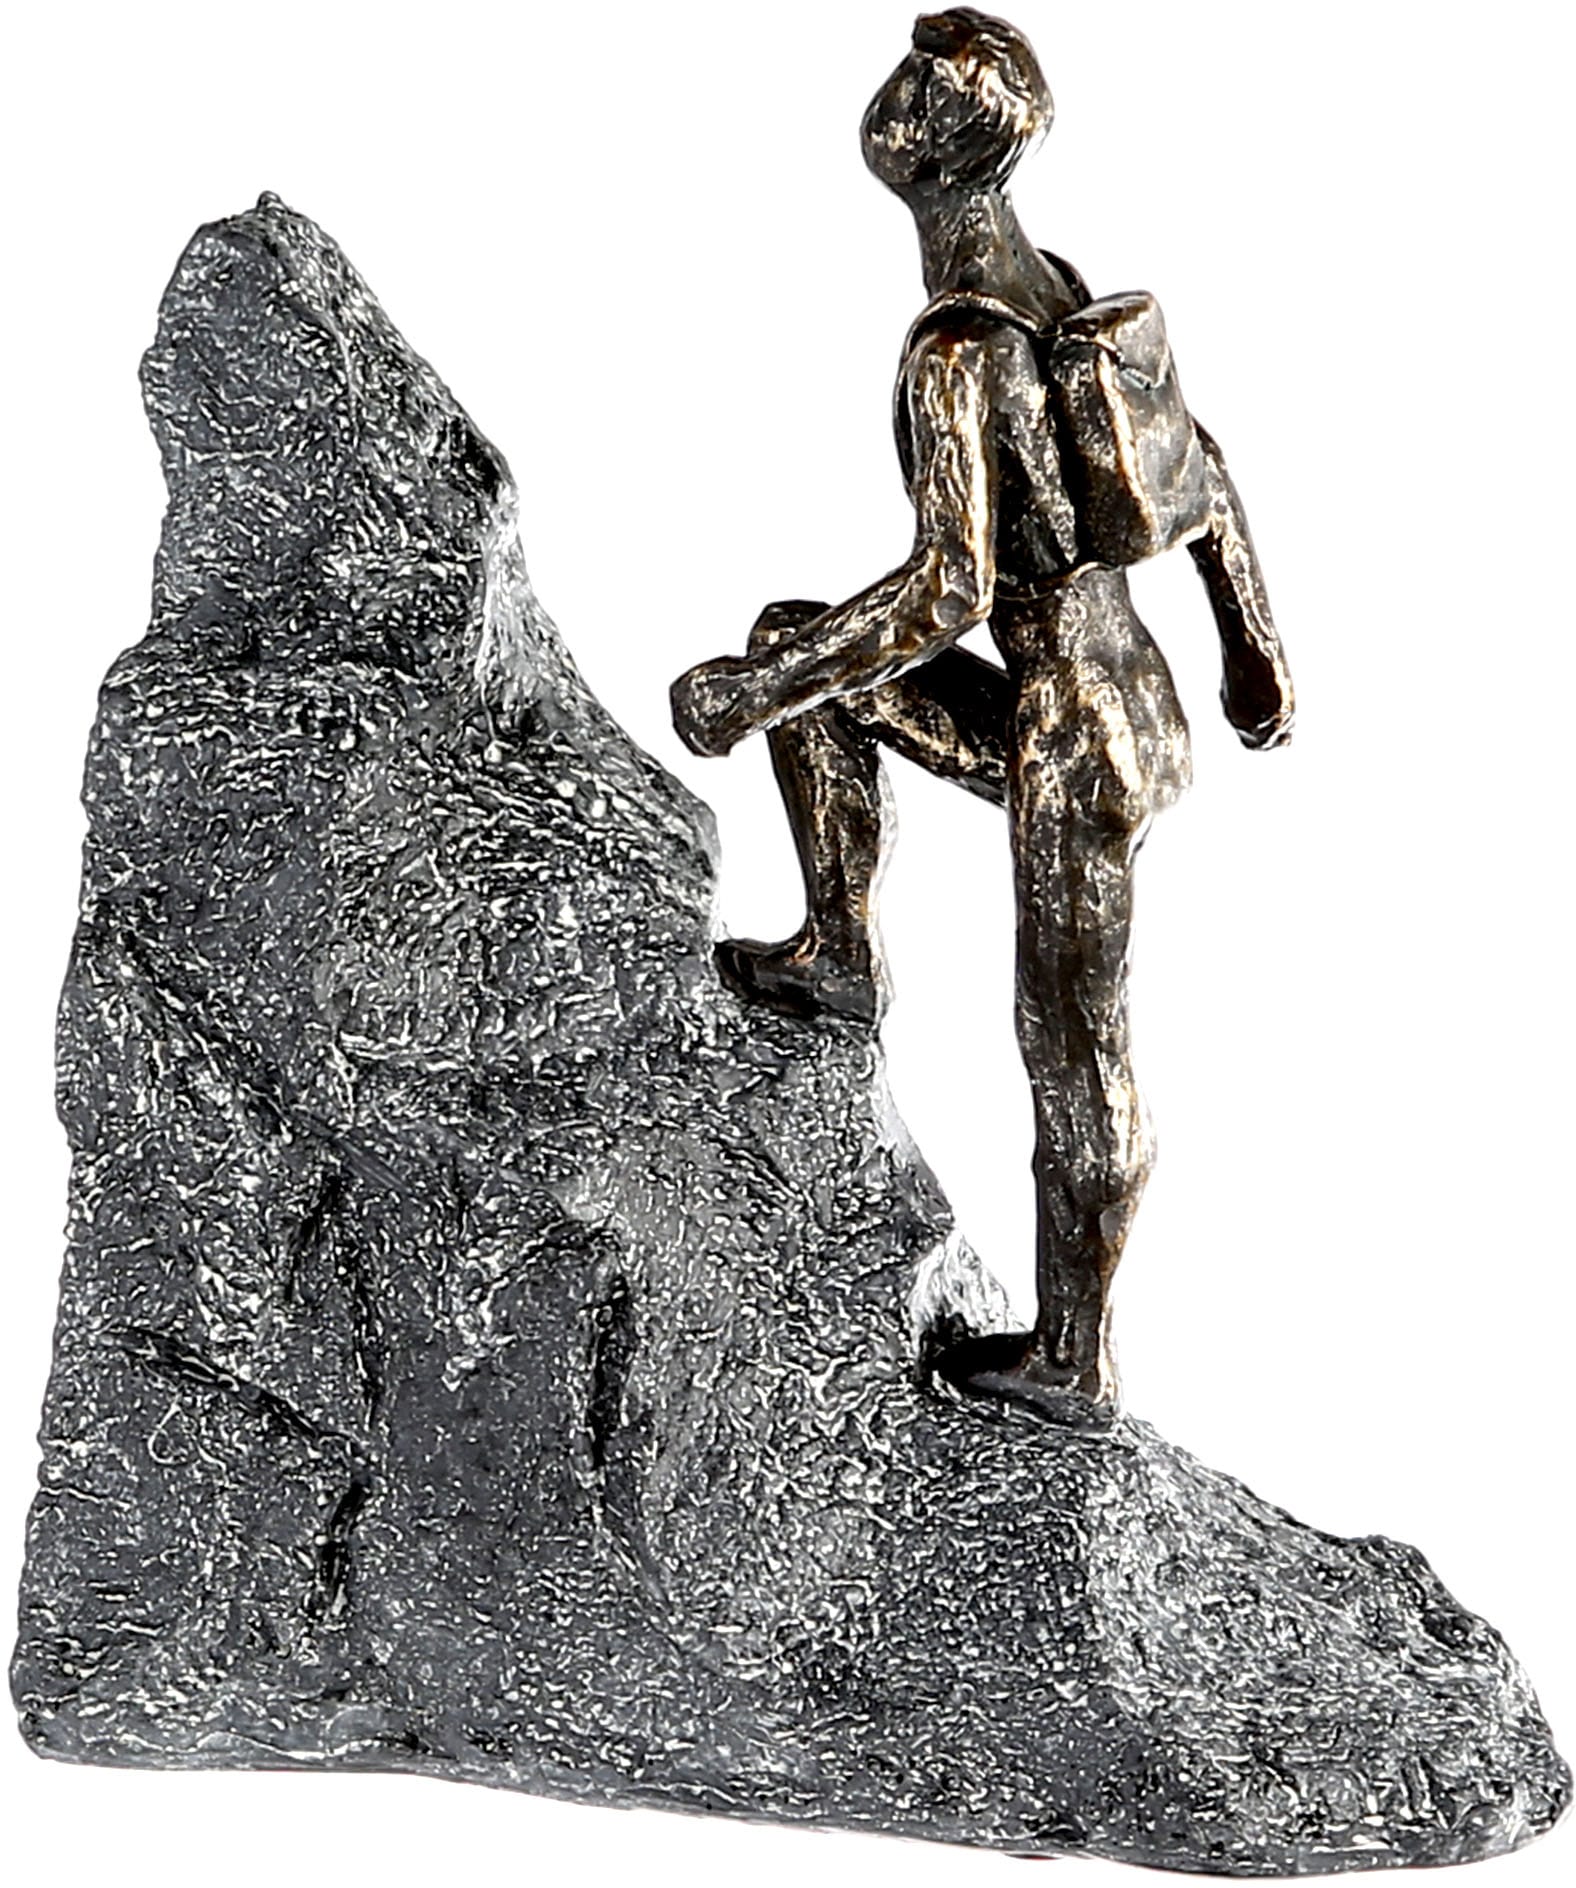 Casablanca Raten by Dekofigur auf Gilde bronzefarben/grau, »Skulptur bronzefarben/grau«, Polyresin Wanderer, kaufen